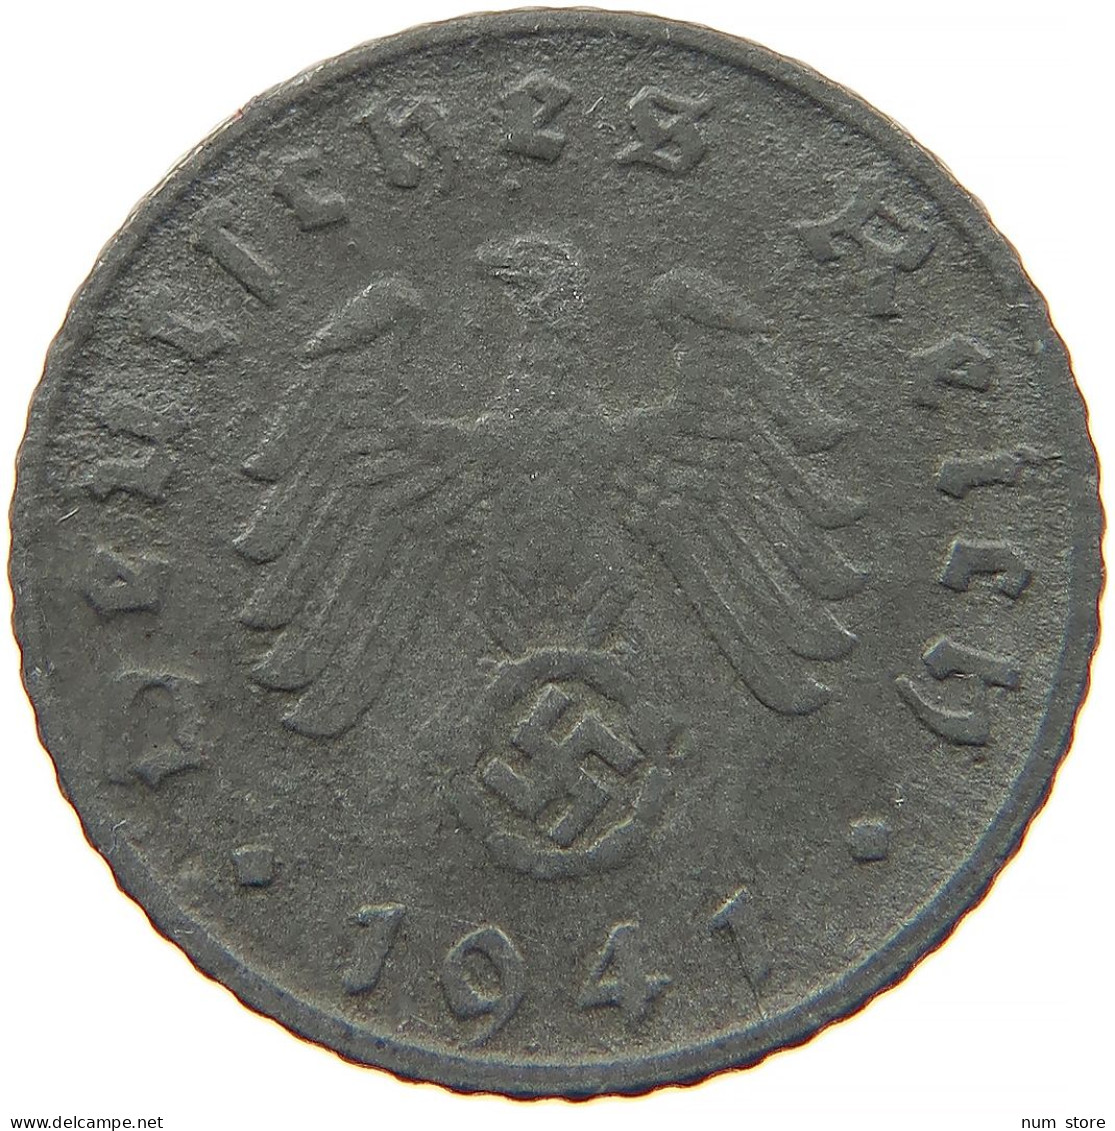 GERMANY 5 REICHSPFENNIG 1941 D #s091 0851 - 5 Reichspfennig